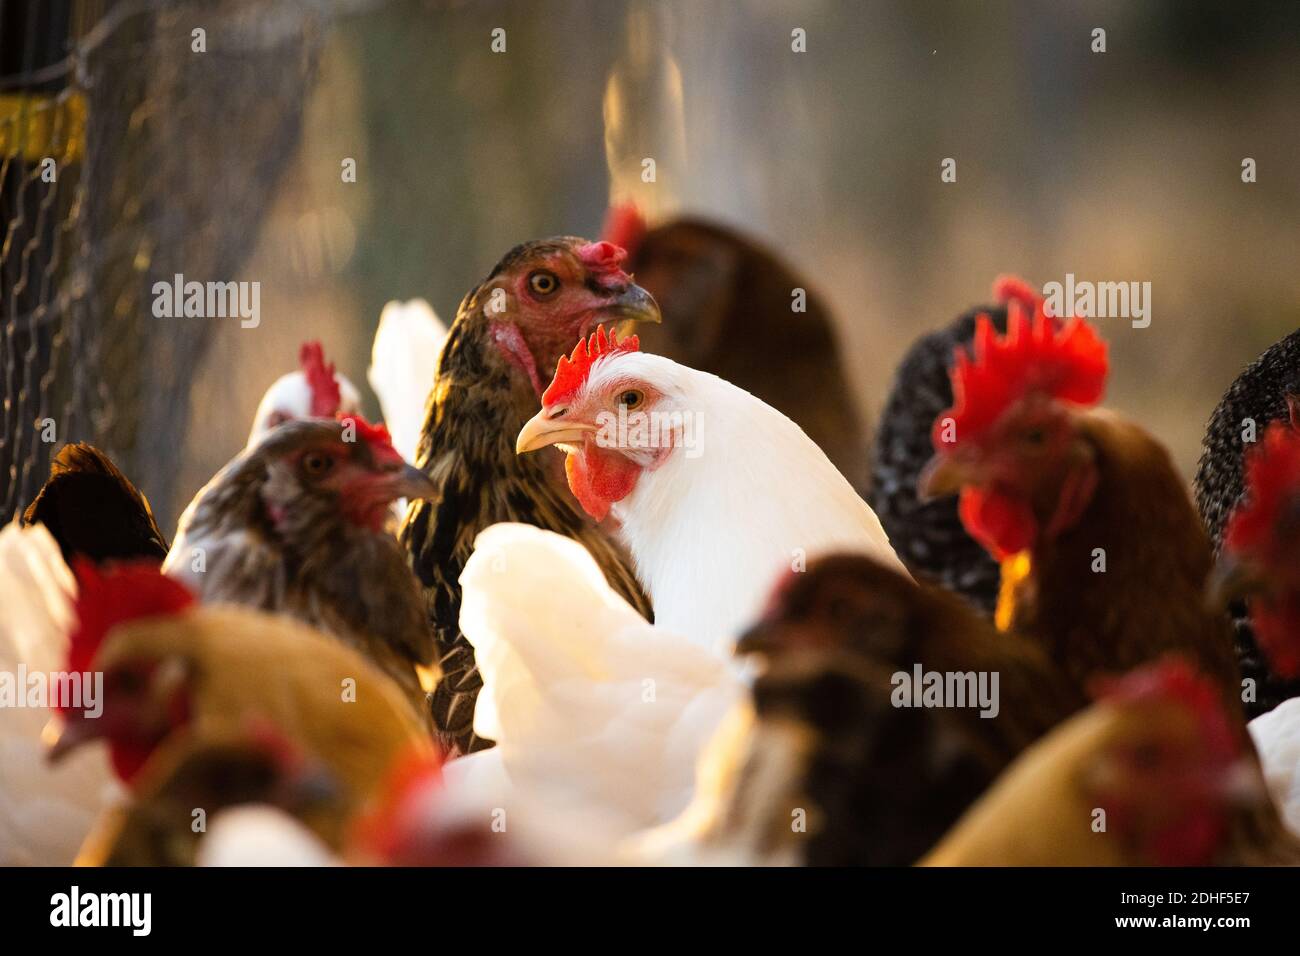 Eine kleine Herde Hühner auf unserem Hof. Die weiße in der Mitte sticht in dieser Szene mit warmen Herbstfarben wirklich heraus. Stockfoto